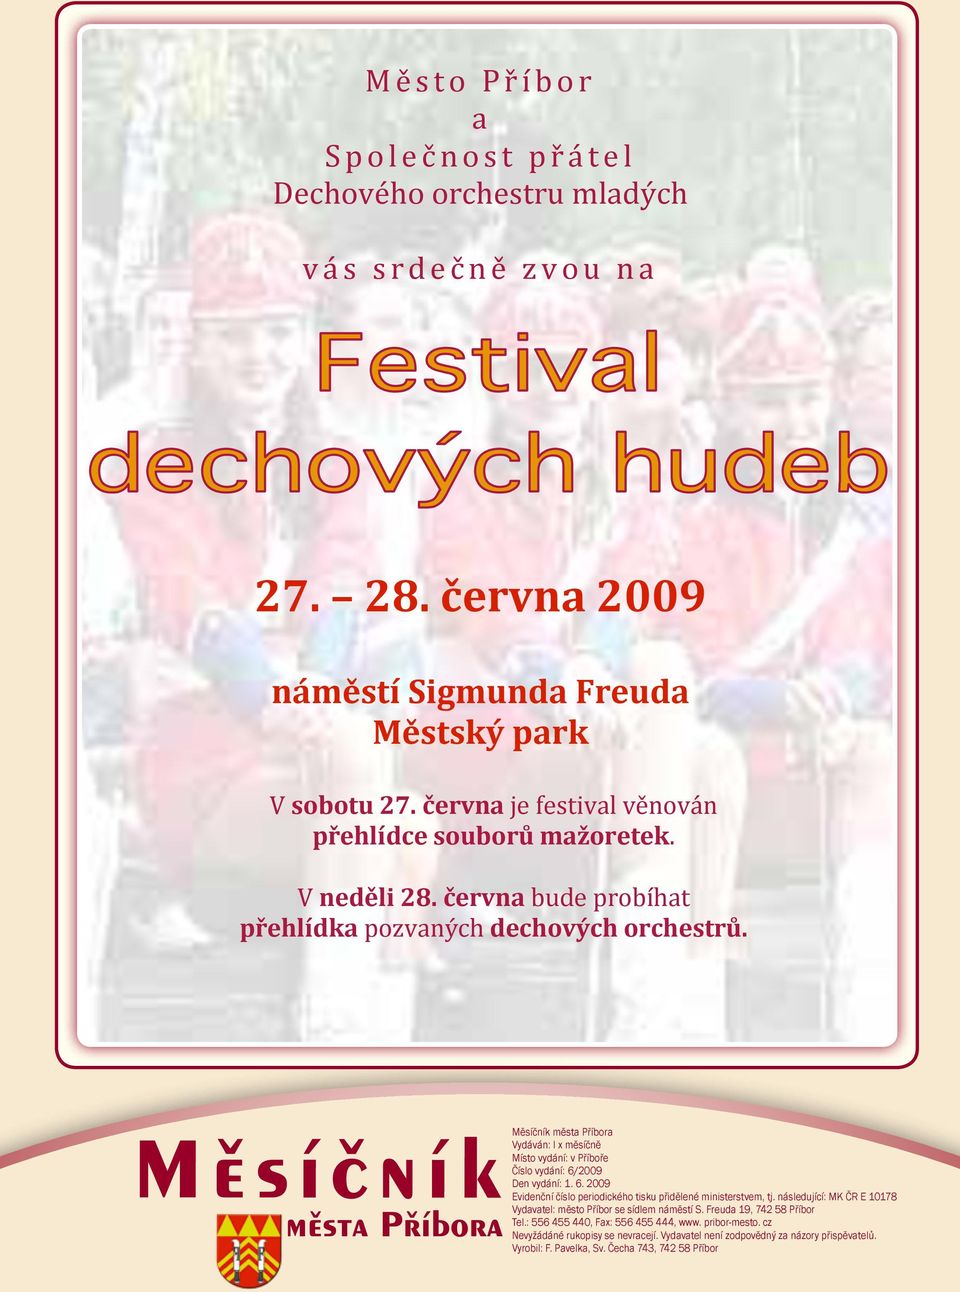 červen 2009 Měsíčník města příbor a 1 - PDF Free Download